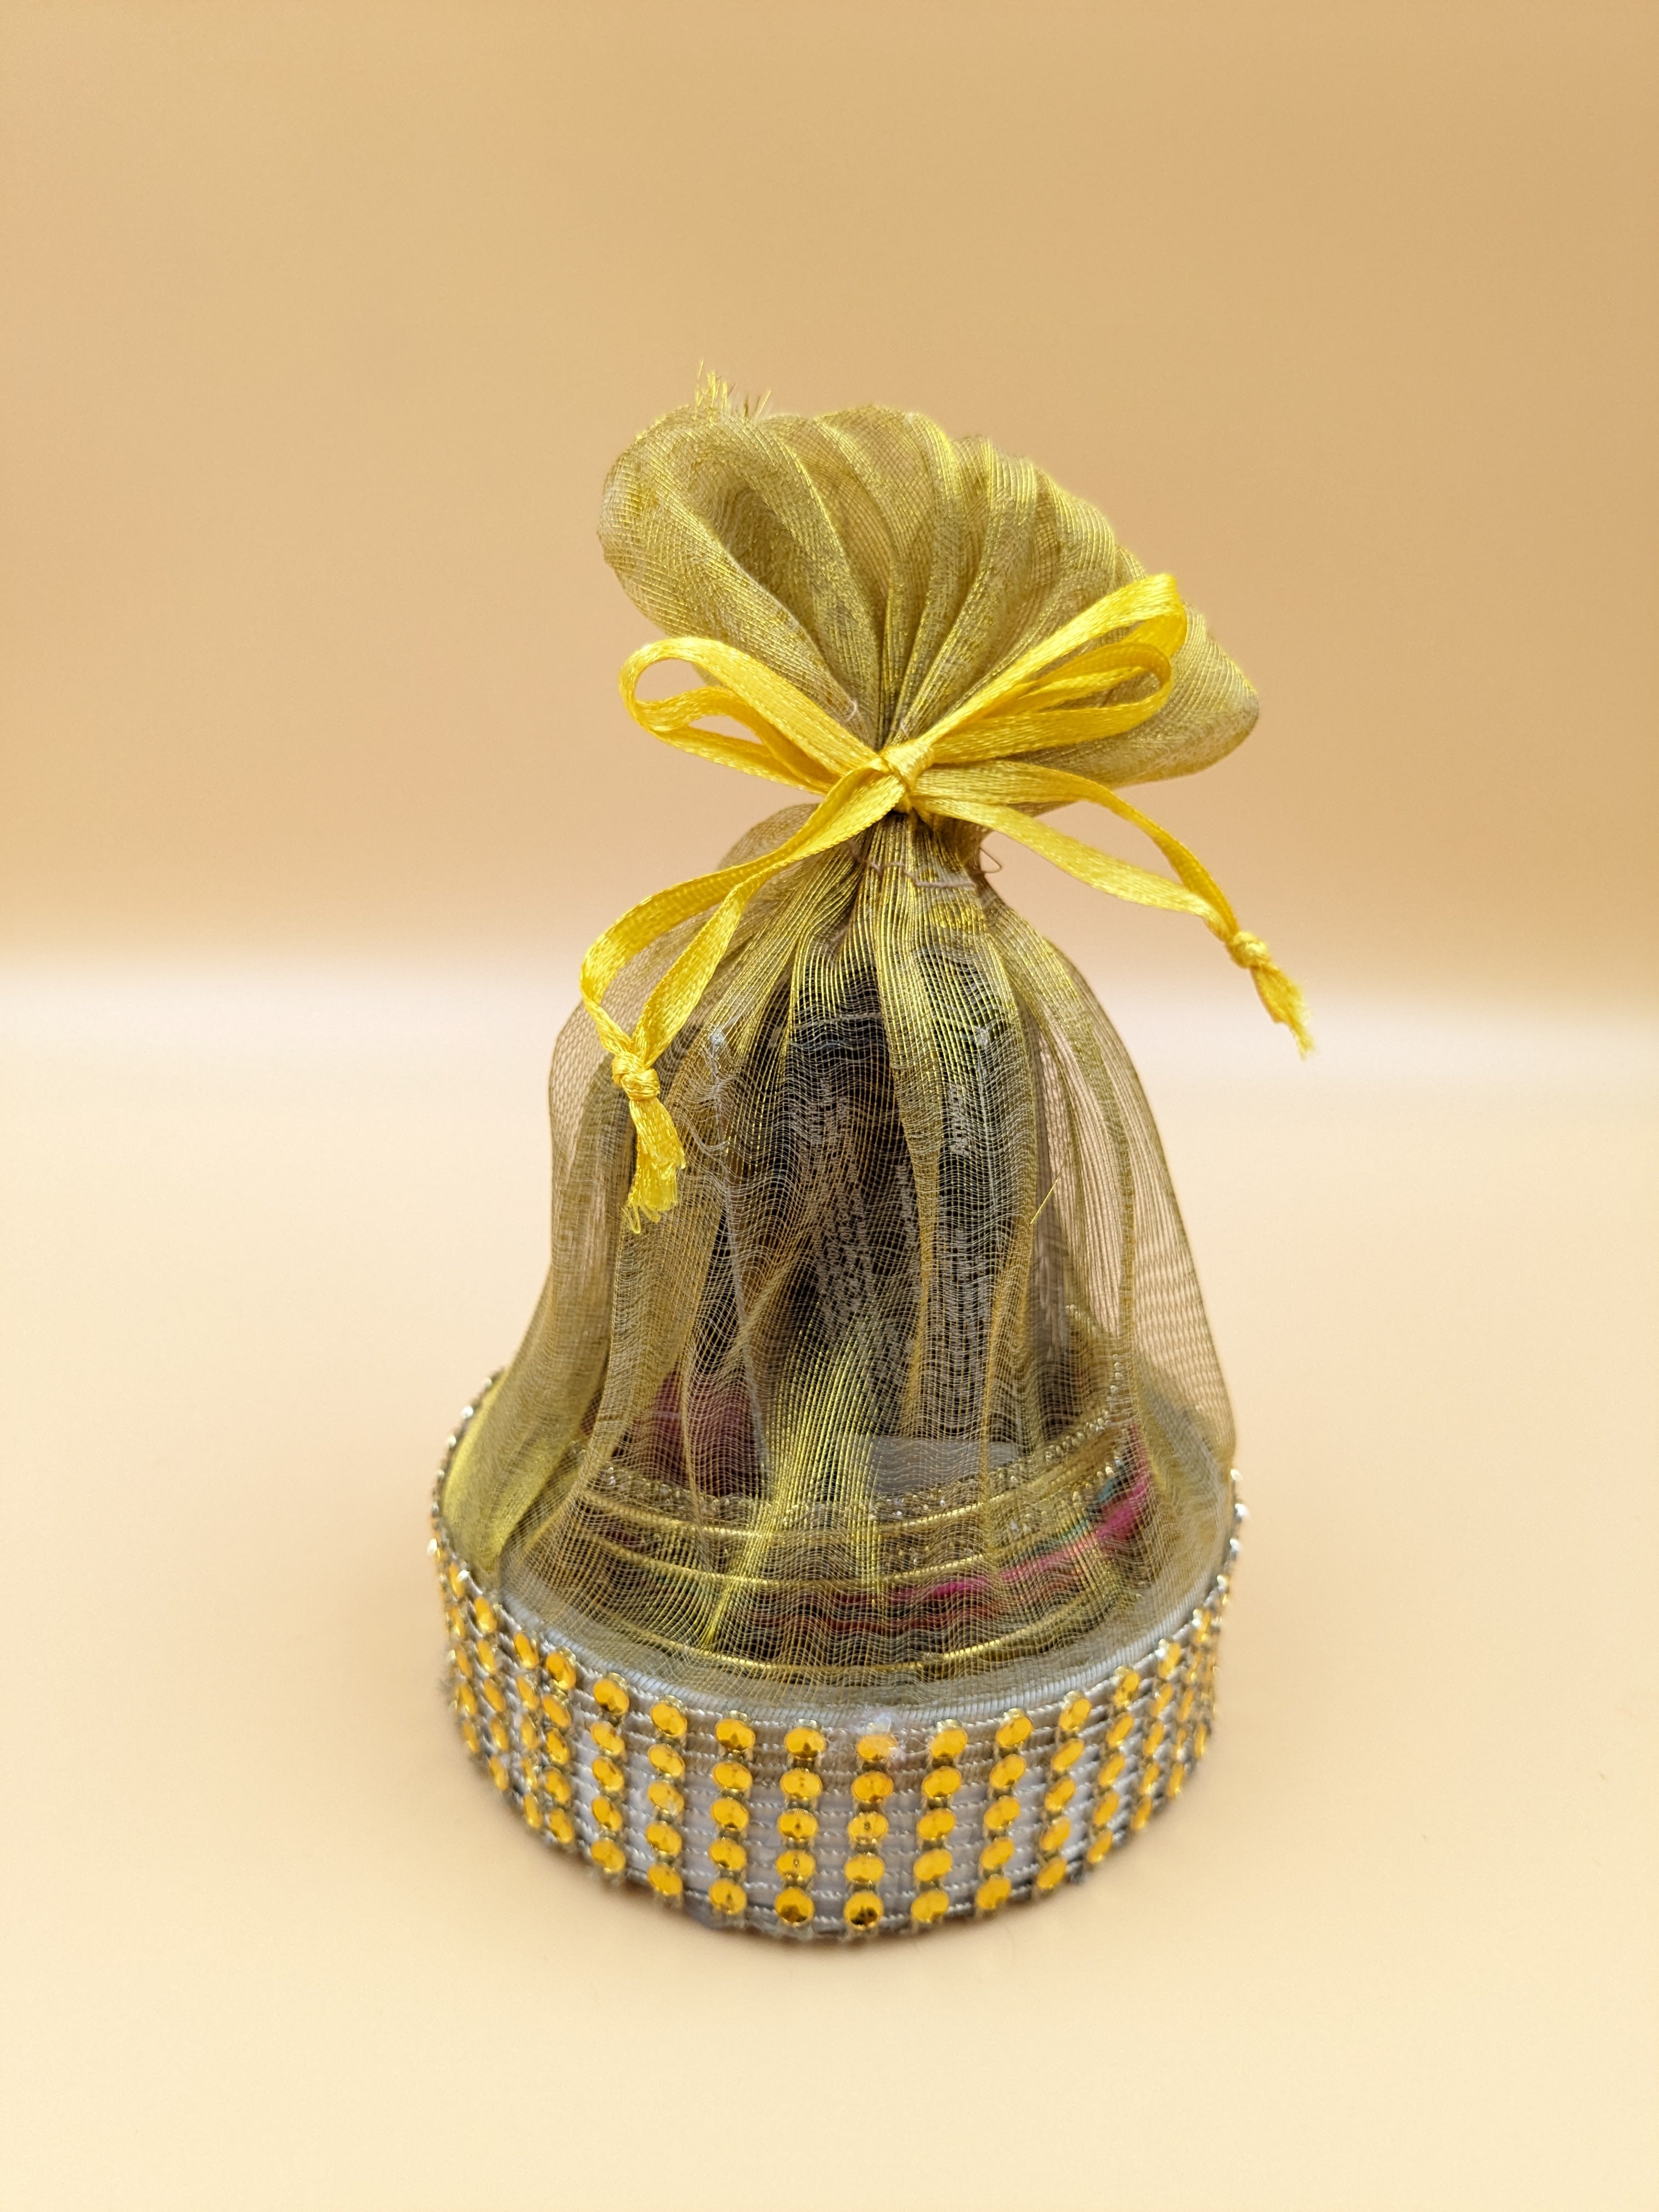 Decorative Designer Gift Packing Basket for Fruits